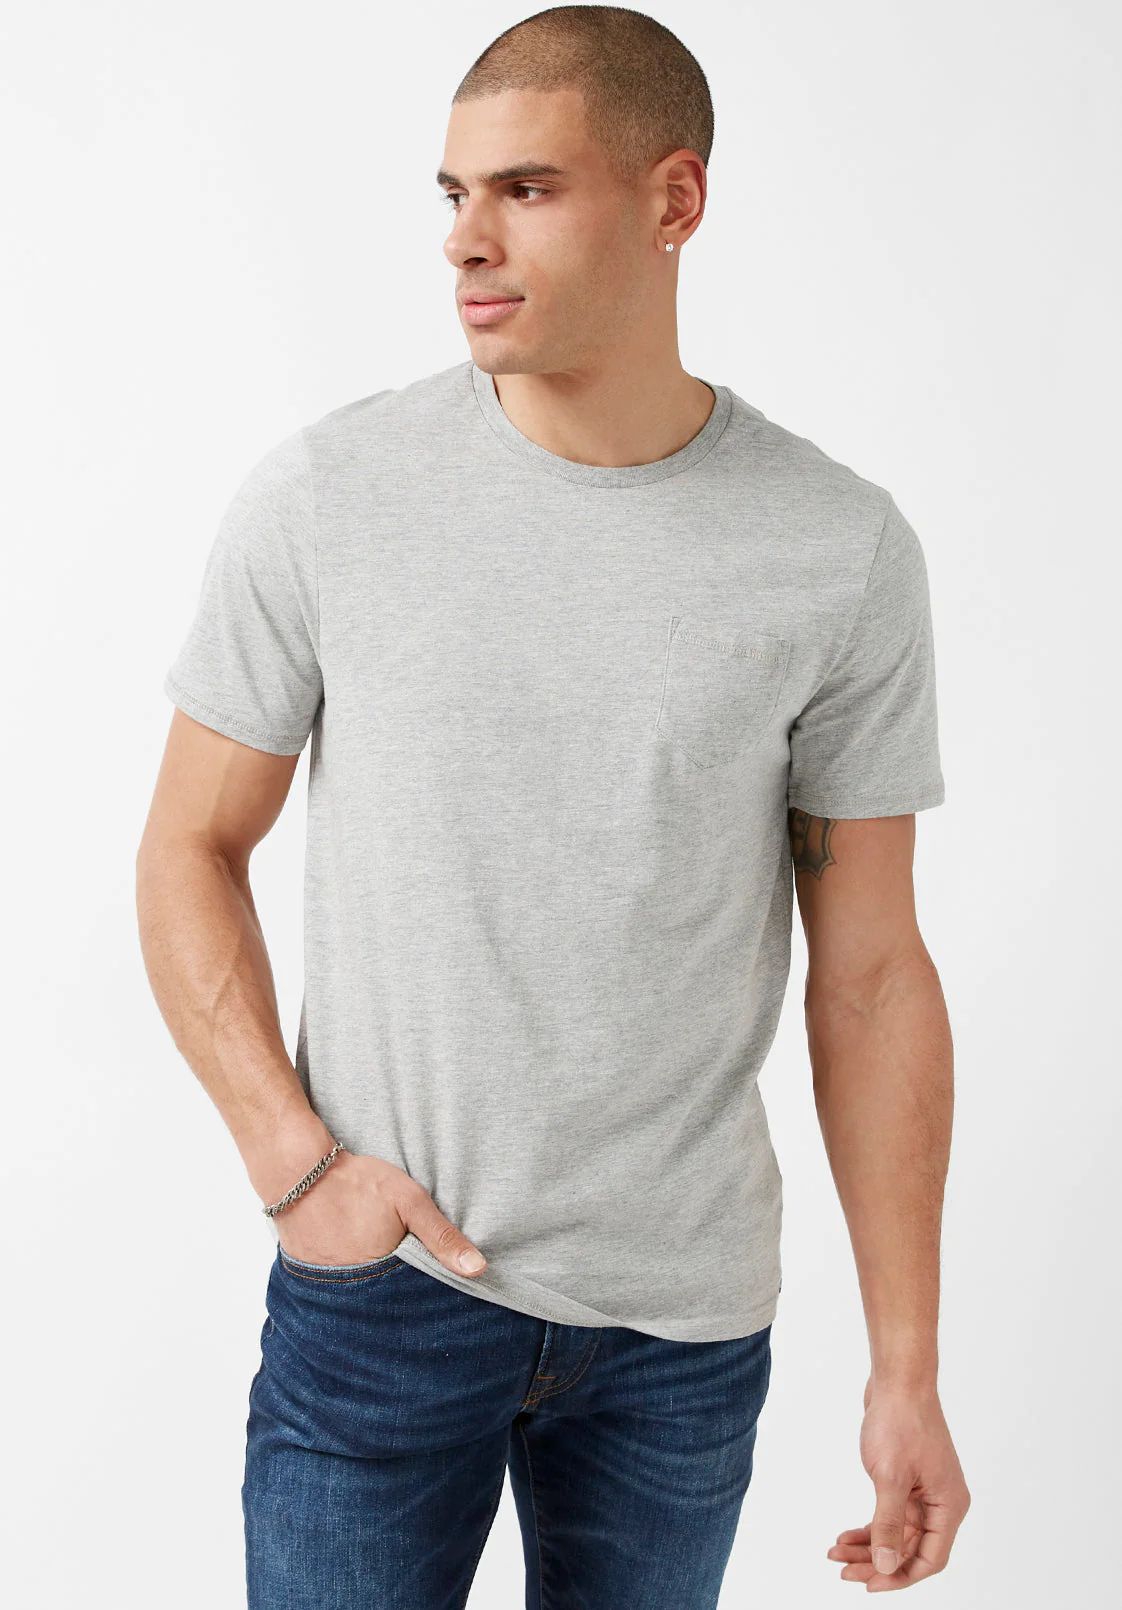 Naimop Grey Jersey T-Shirt - BPM13887 | Buffalo David Bitton